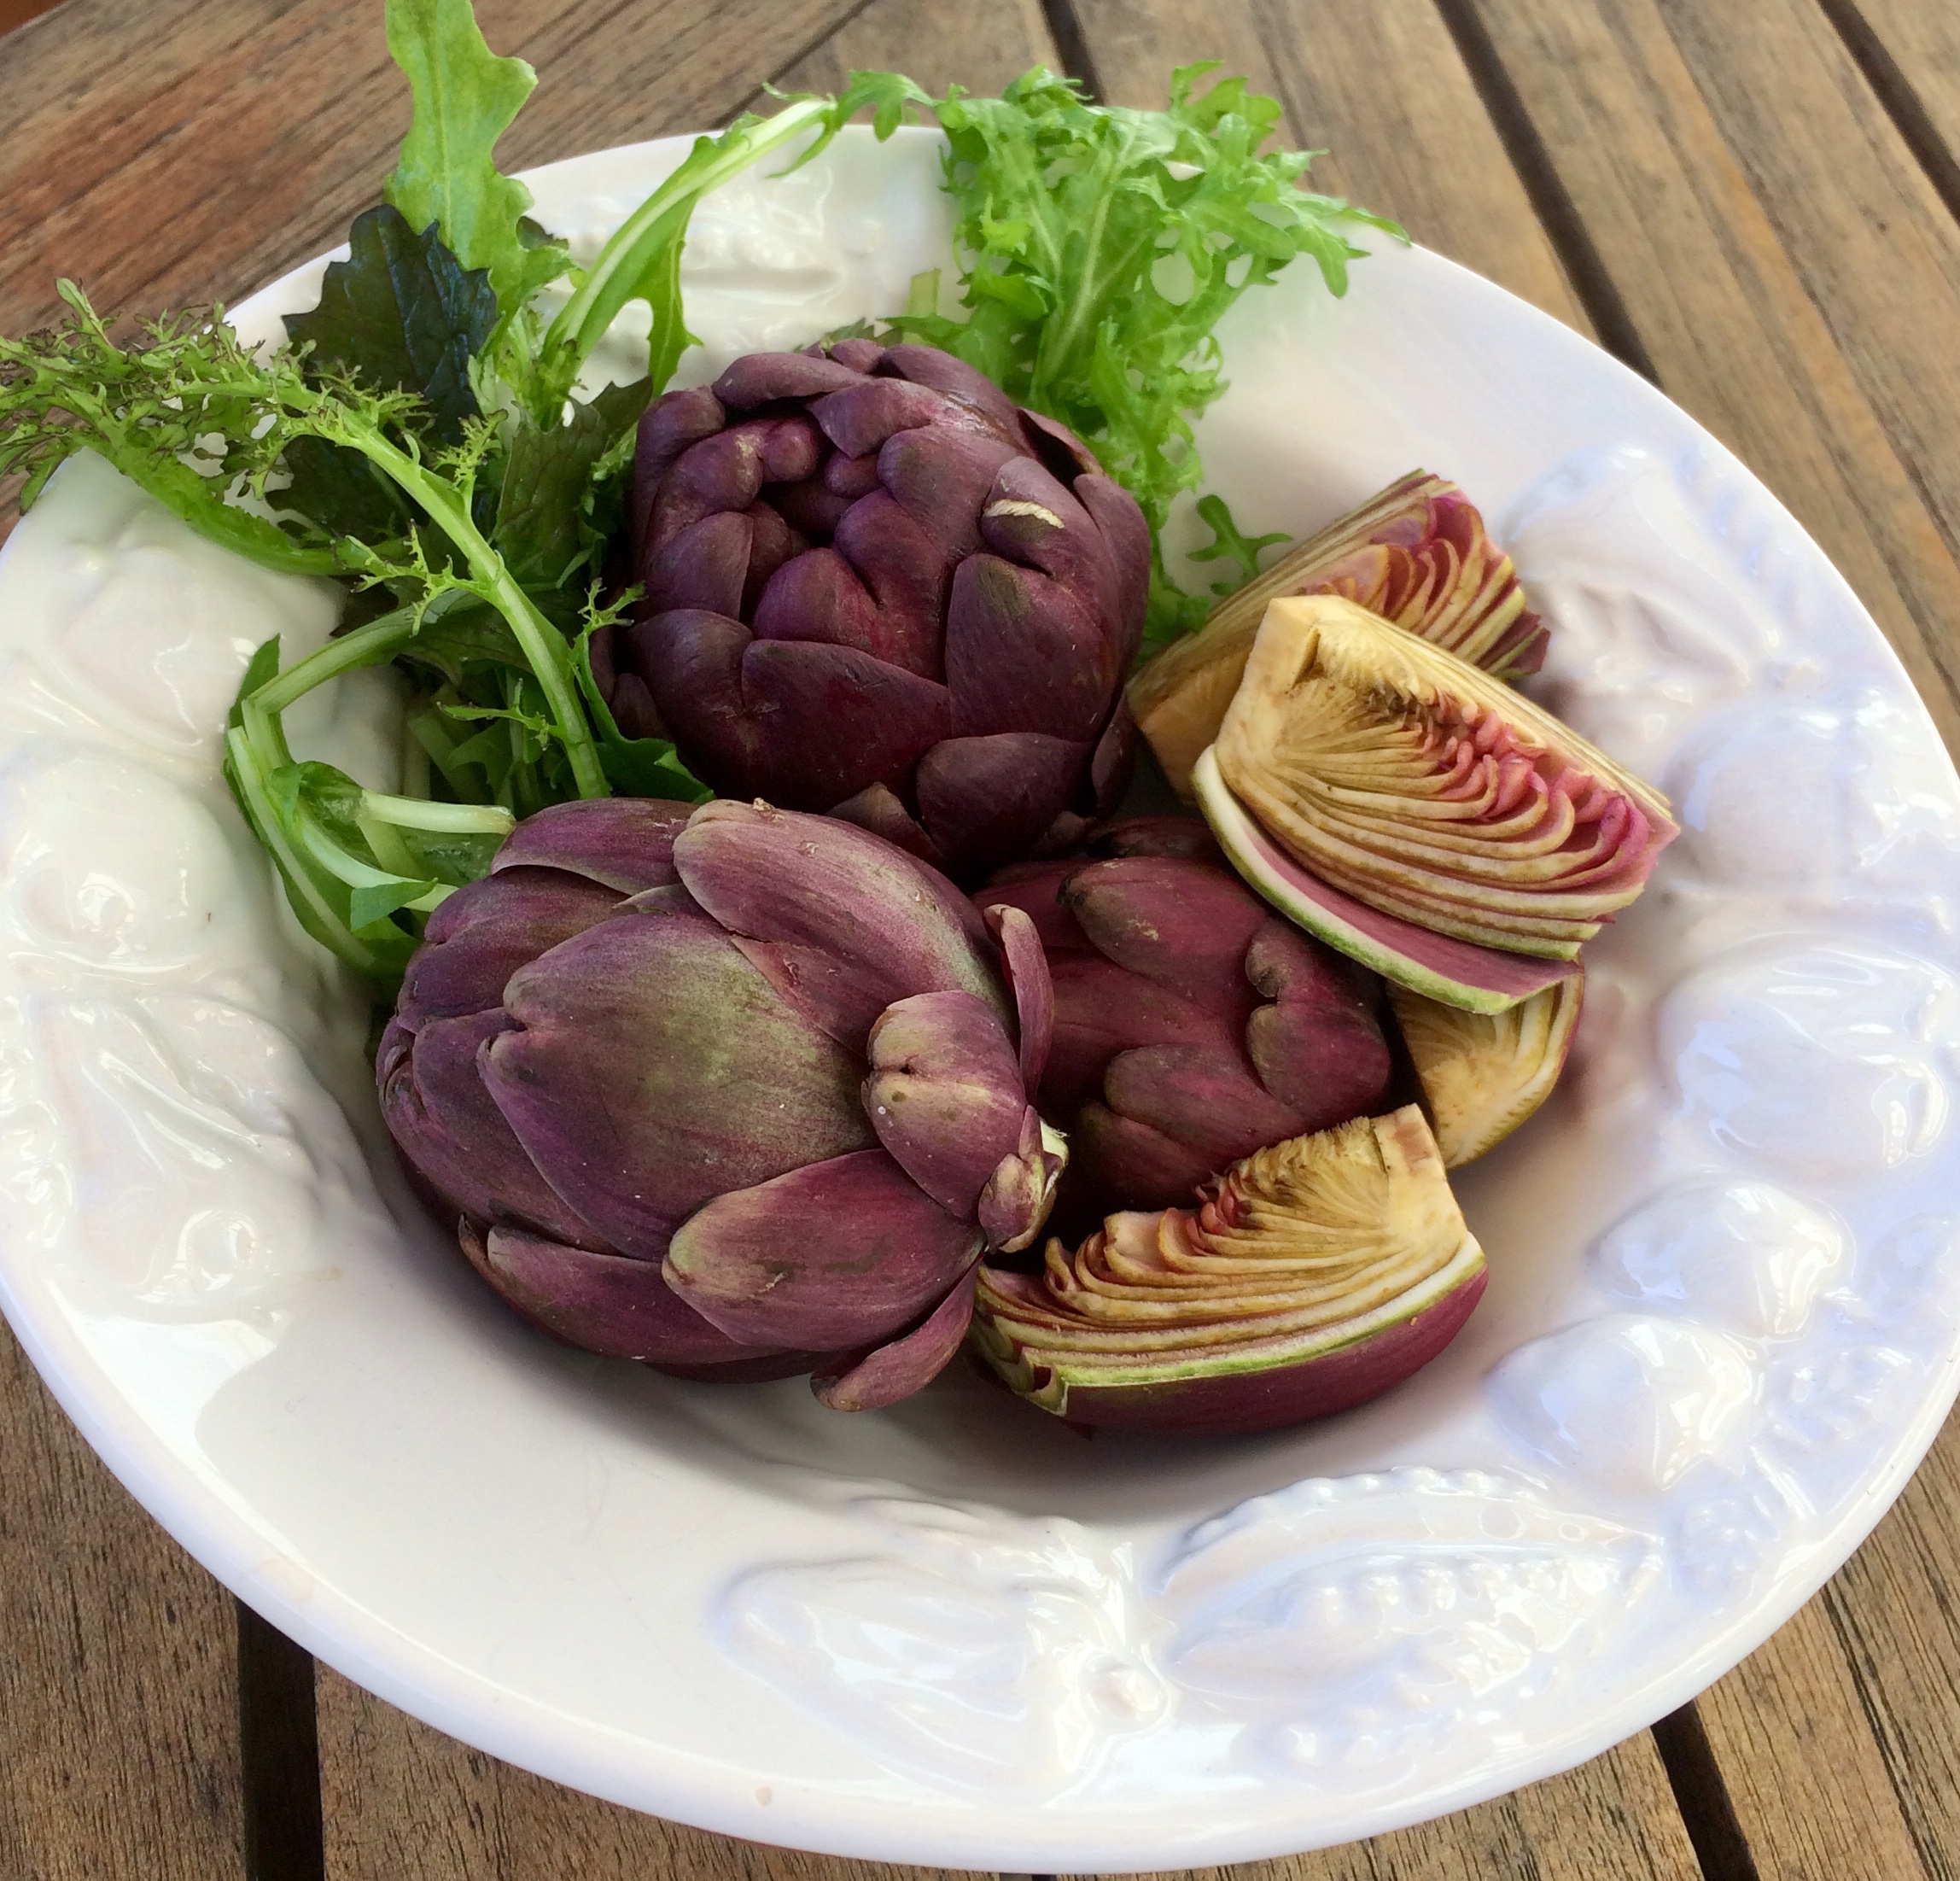 artischocken als Salat, wichtige Ballaststoffe, Inulin, wichtig für Darm